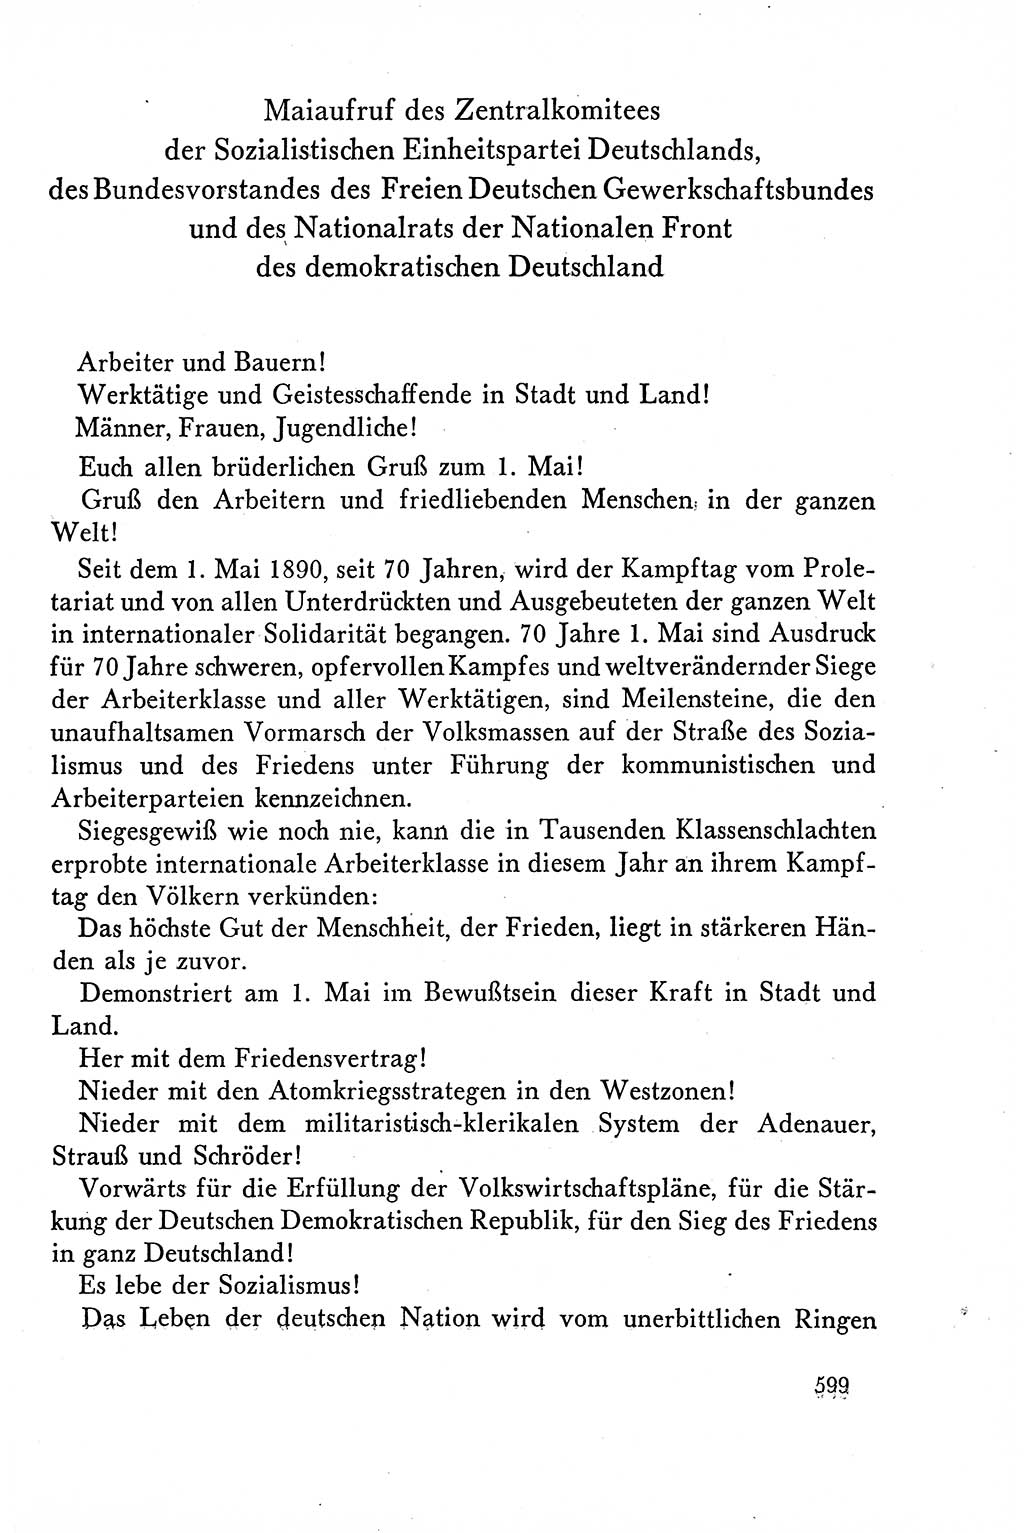 Dokumente der Sozialistischen Einheitspartei Deutschlands (SED) [Deutsche Demokratische Republik (DDR)] 1958-1959, Seite 599 (Dok. SED DDR 1958-1959, S. 599)